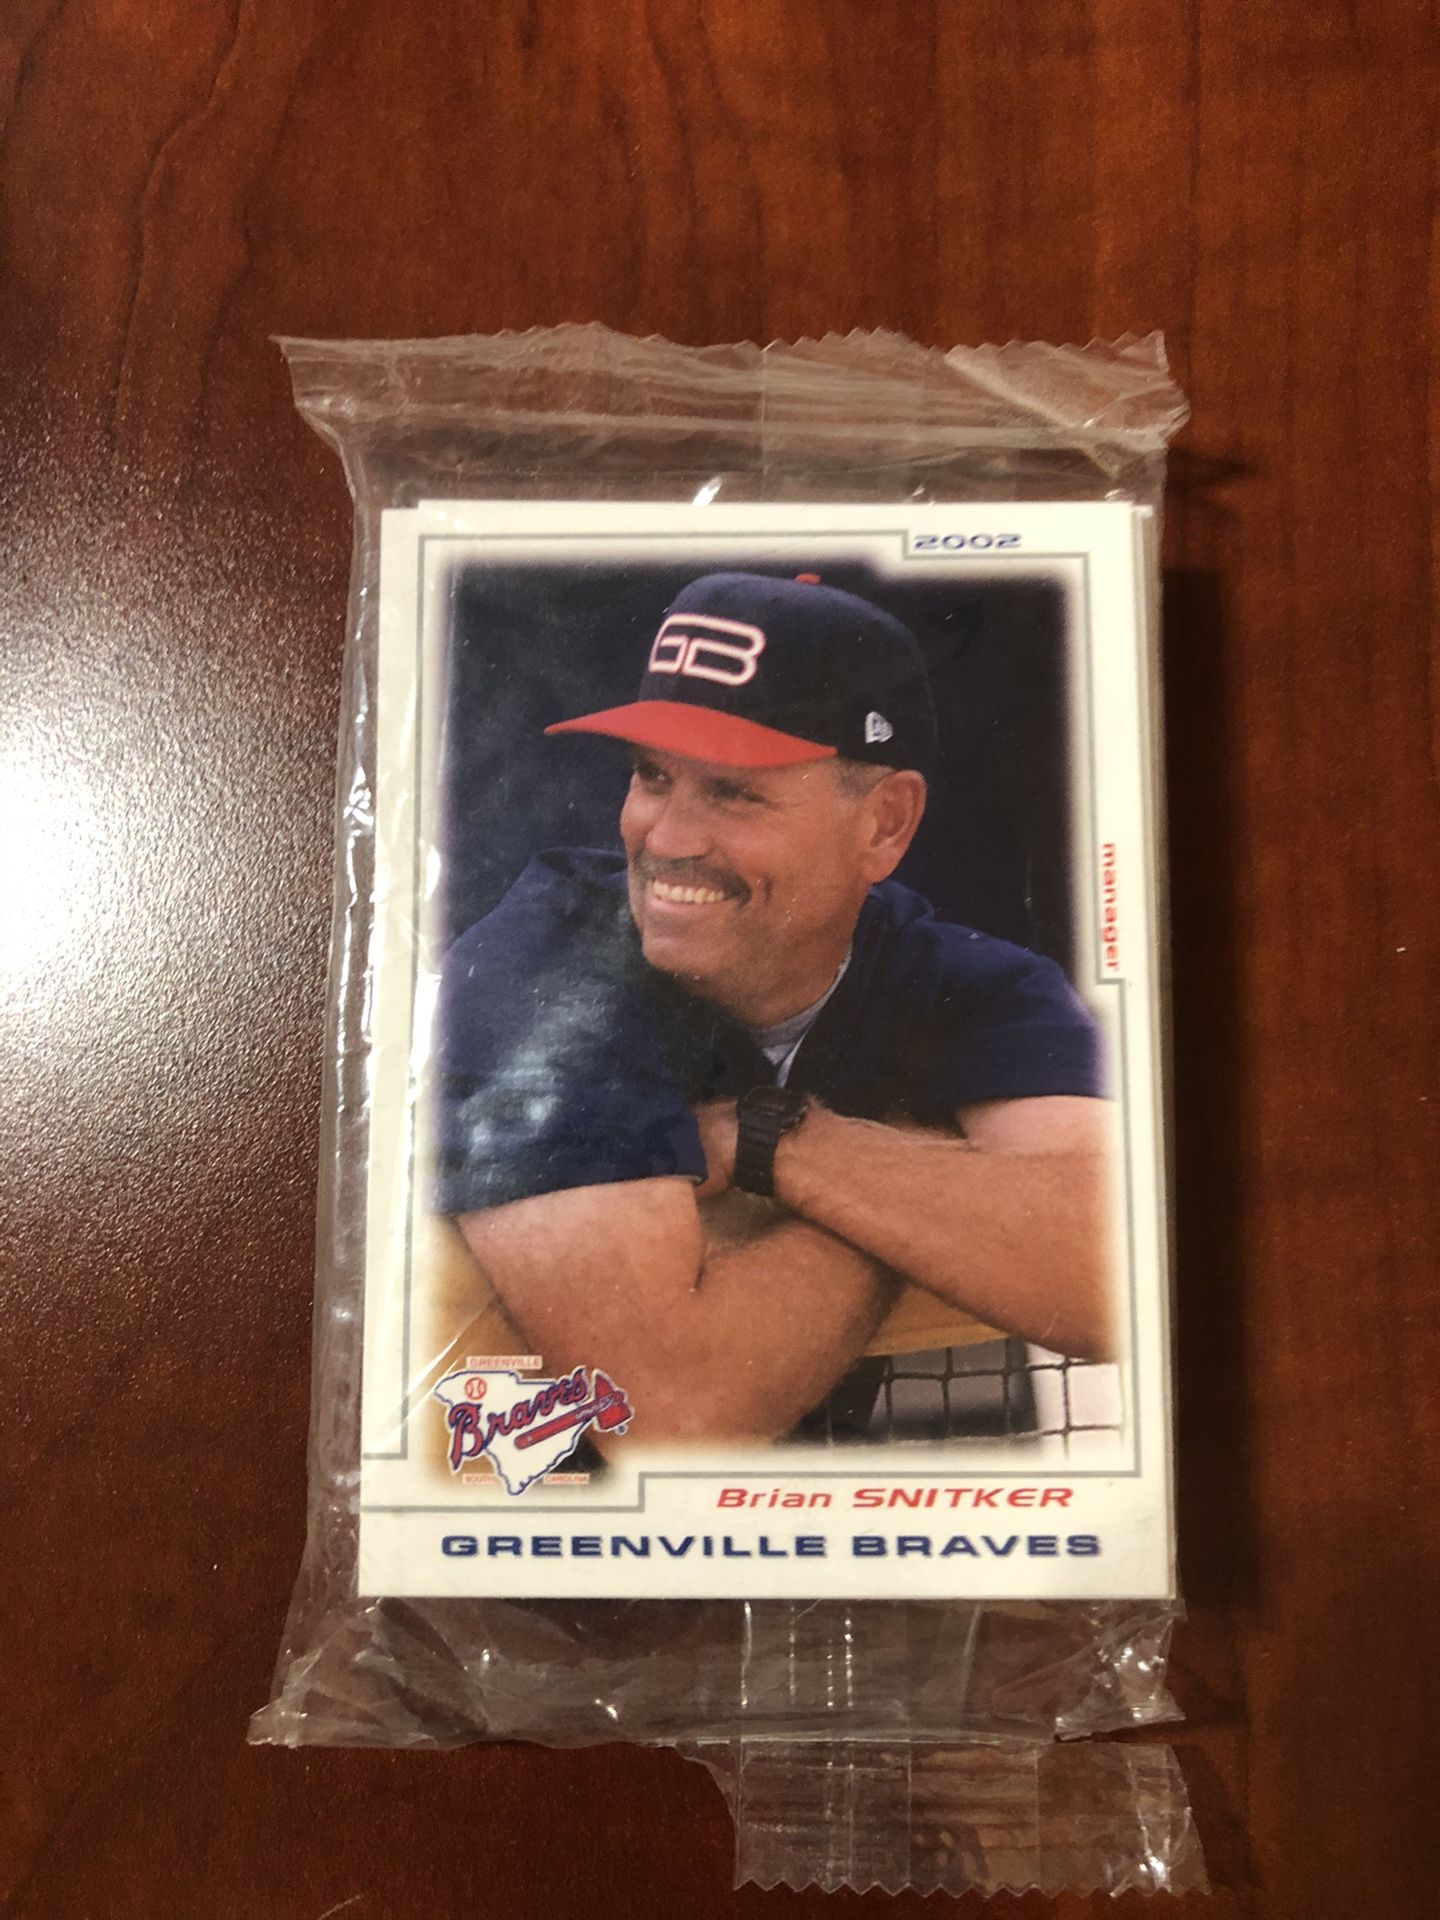 Greenville Braves baseball cards